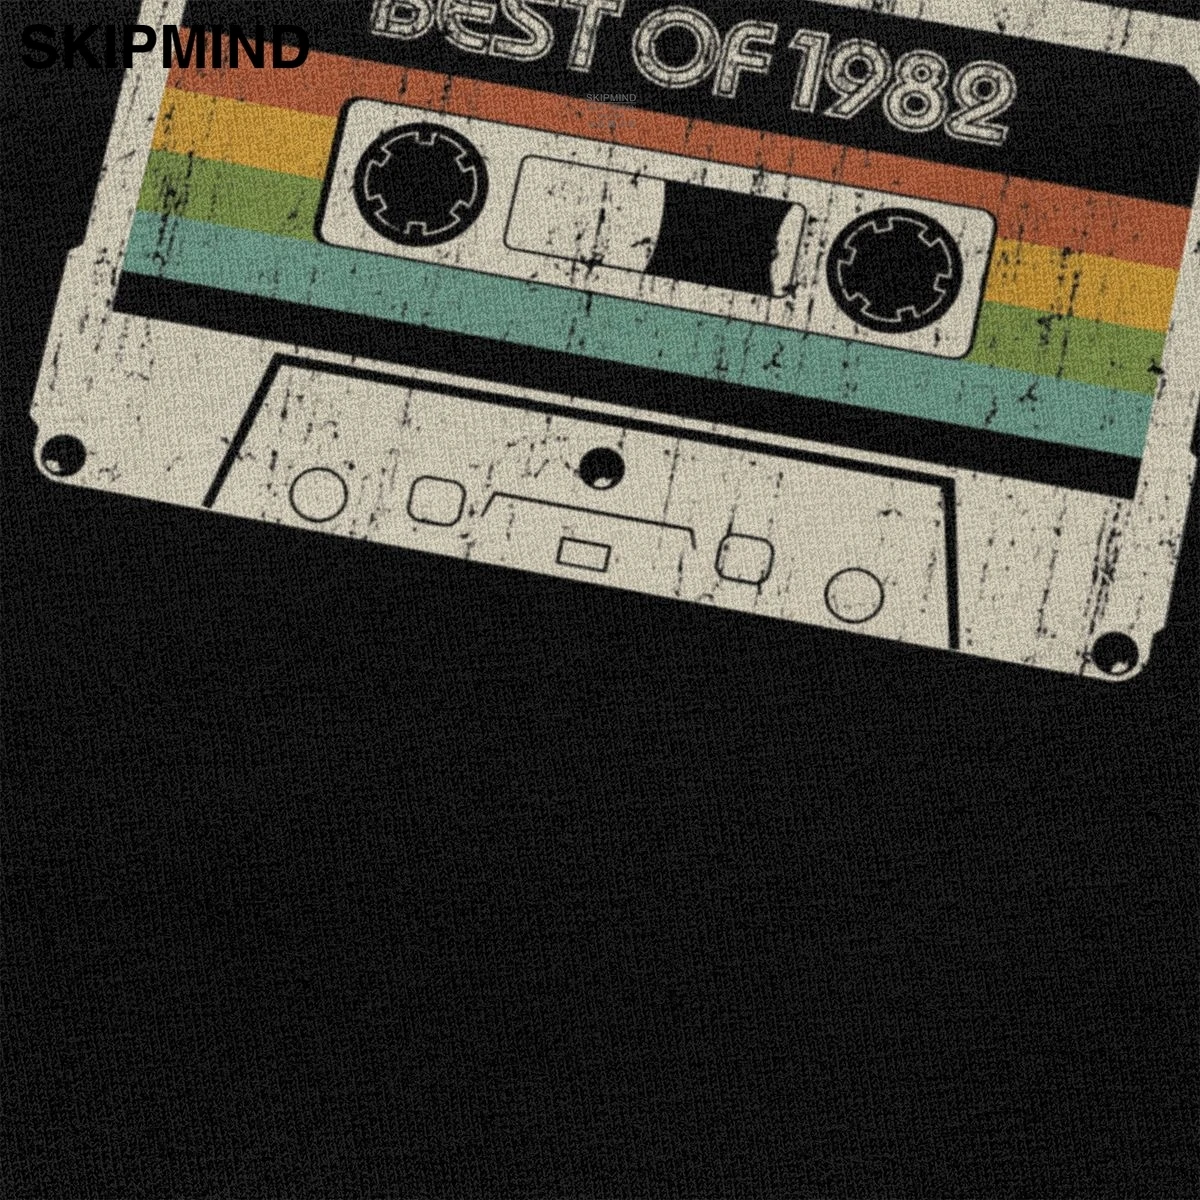 Vintage Mejor De 1982 Camiseta de los Hombres 38 Cumpleaños de Cassette camiseta de Mangas Cortas O-cuello de Algodón de la Camiseta de la Camiseta de Moda la parte Superior de la Mercancía 4